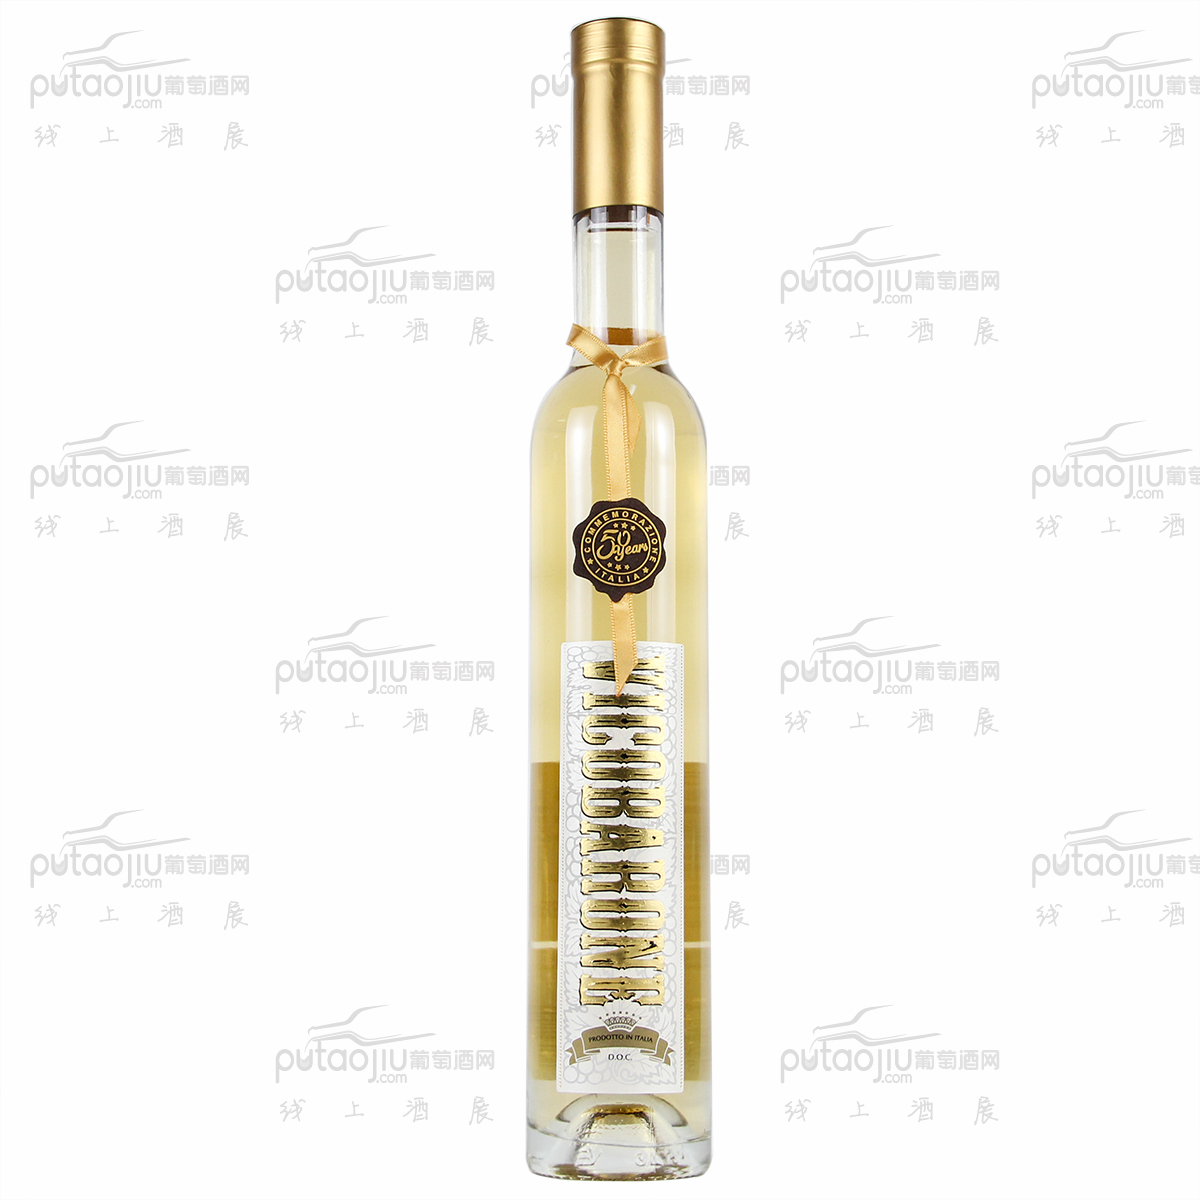 意大利艾米利亚万多酒庄马尔维萨水晶冰川晚收DOC甜白葡萄酒375ml